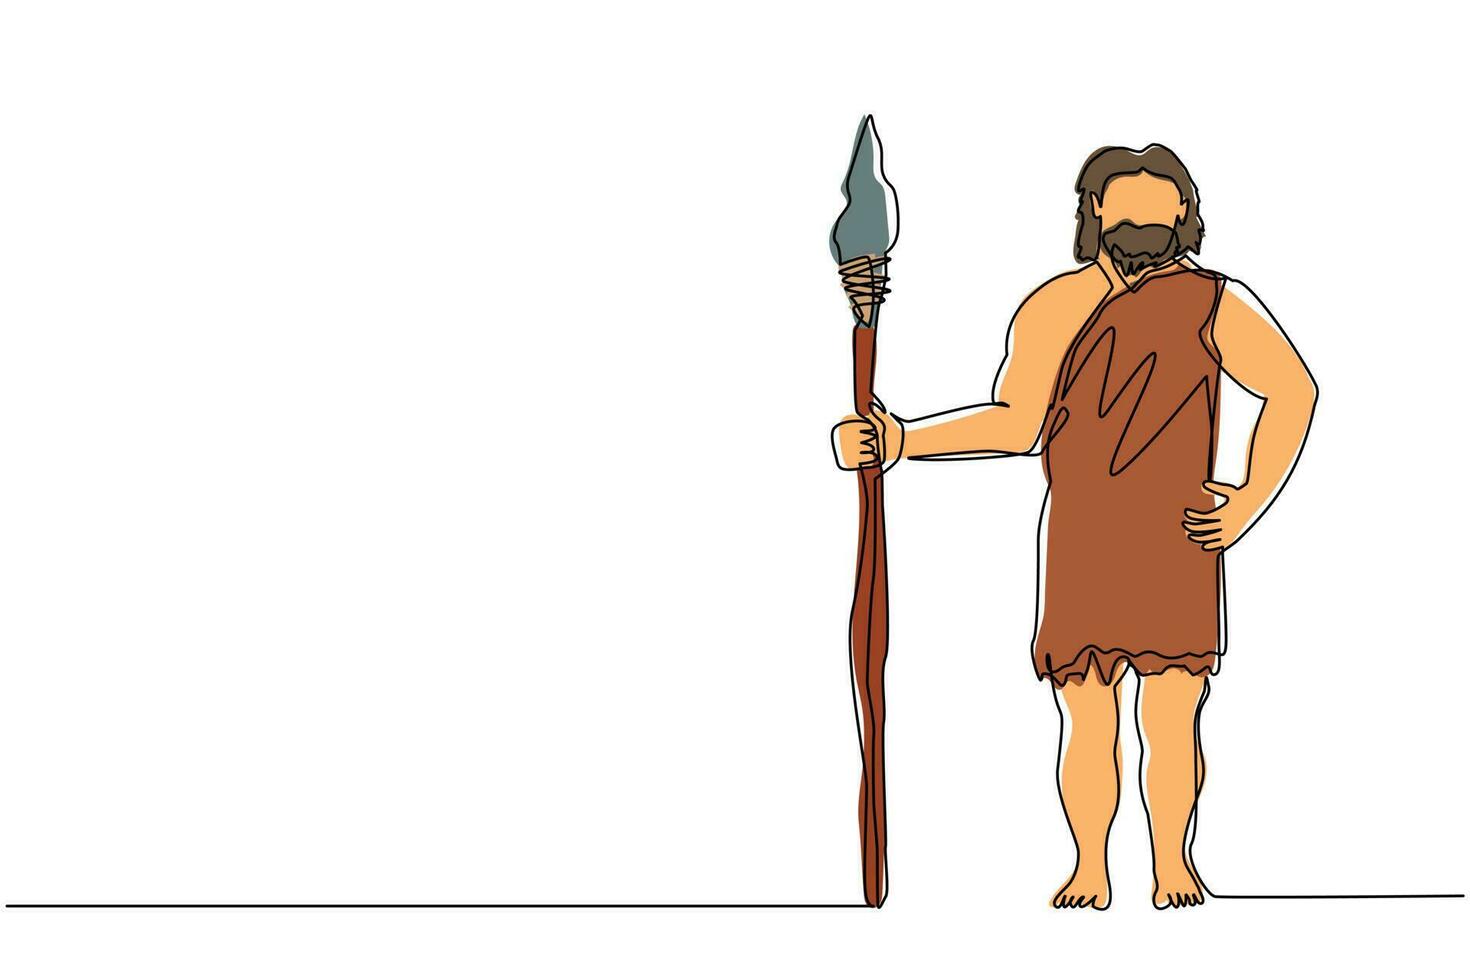 kontinuierliche eine Linie, die einen primitiven archaischen Mann zeichnet, der Kleidung aus Tierhaut trägt und einen Speer hält. Frühmensch, Höhlenmensch, Krieger oder Jäger aus der Steinzeit. einzeiliges zeichnen design vektorgrafik vektor